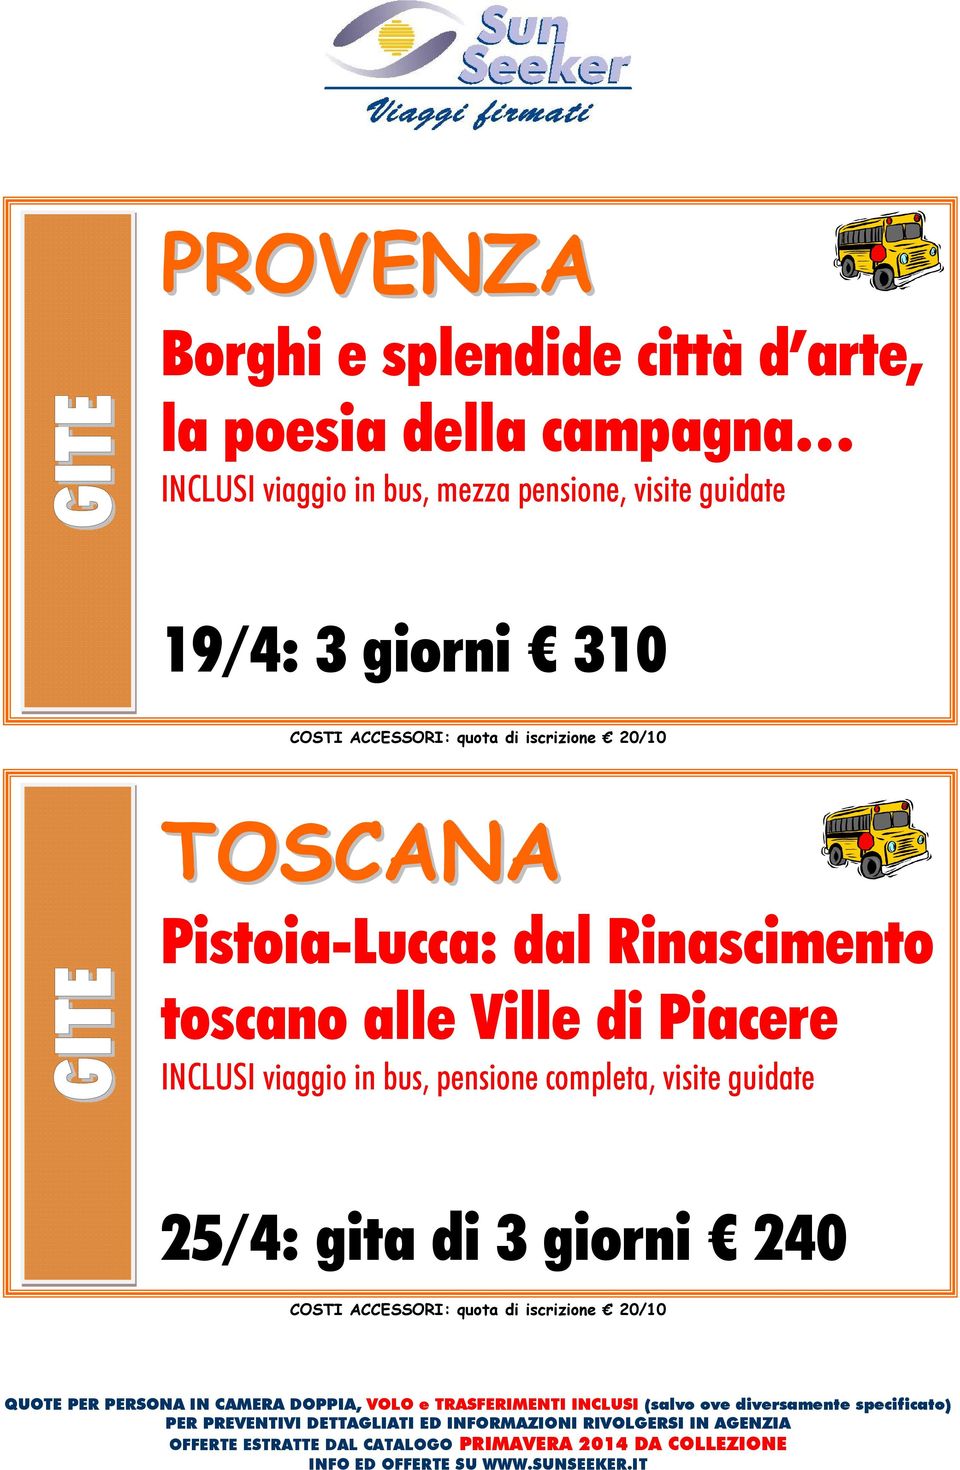 TOSCANA Pistoia-Lucca: dal Rinascimento toscano alle Ville di Piacere